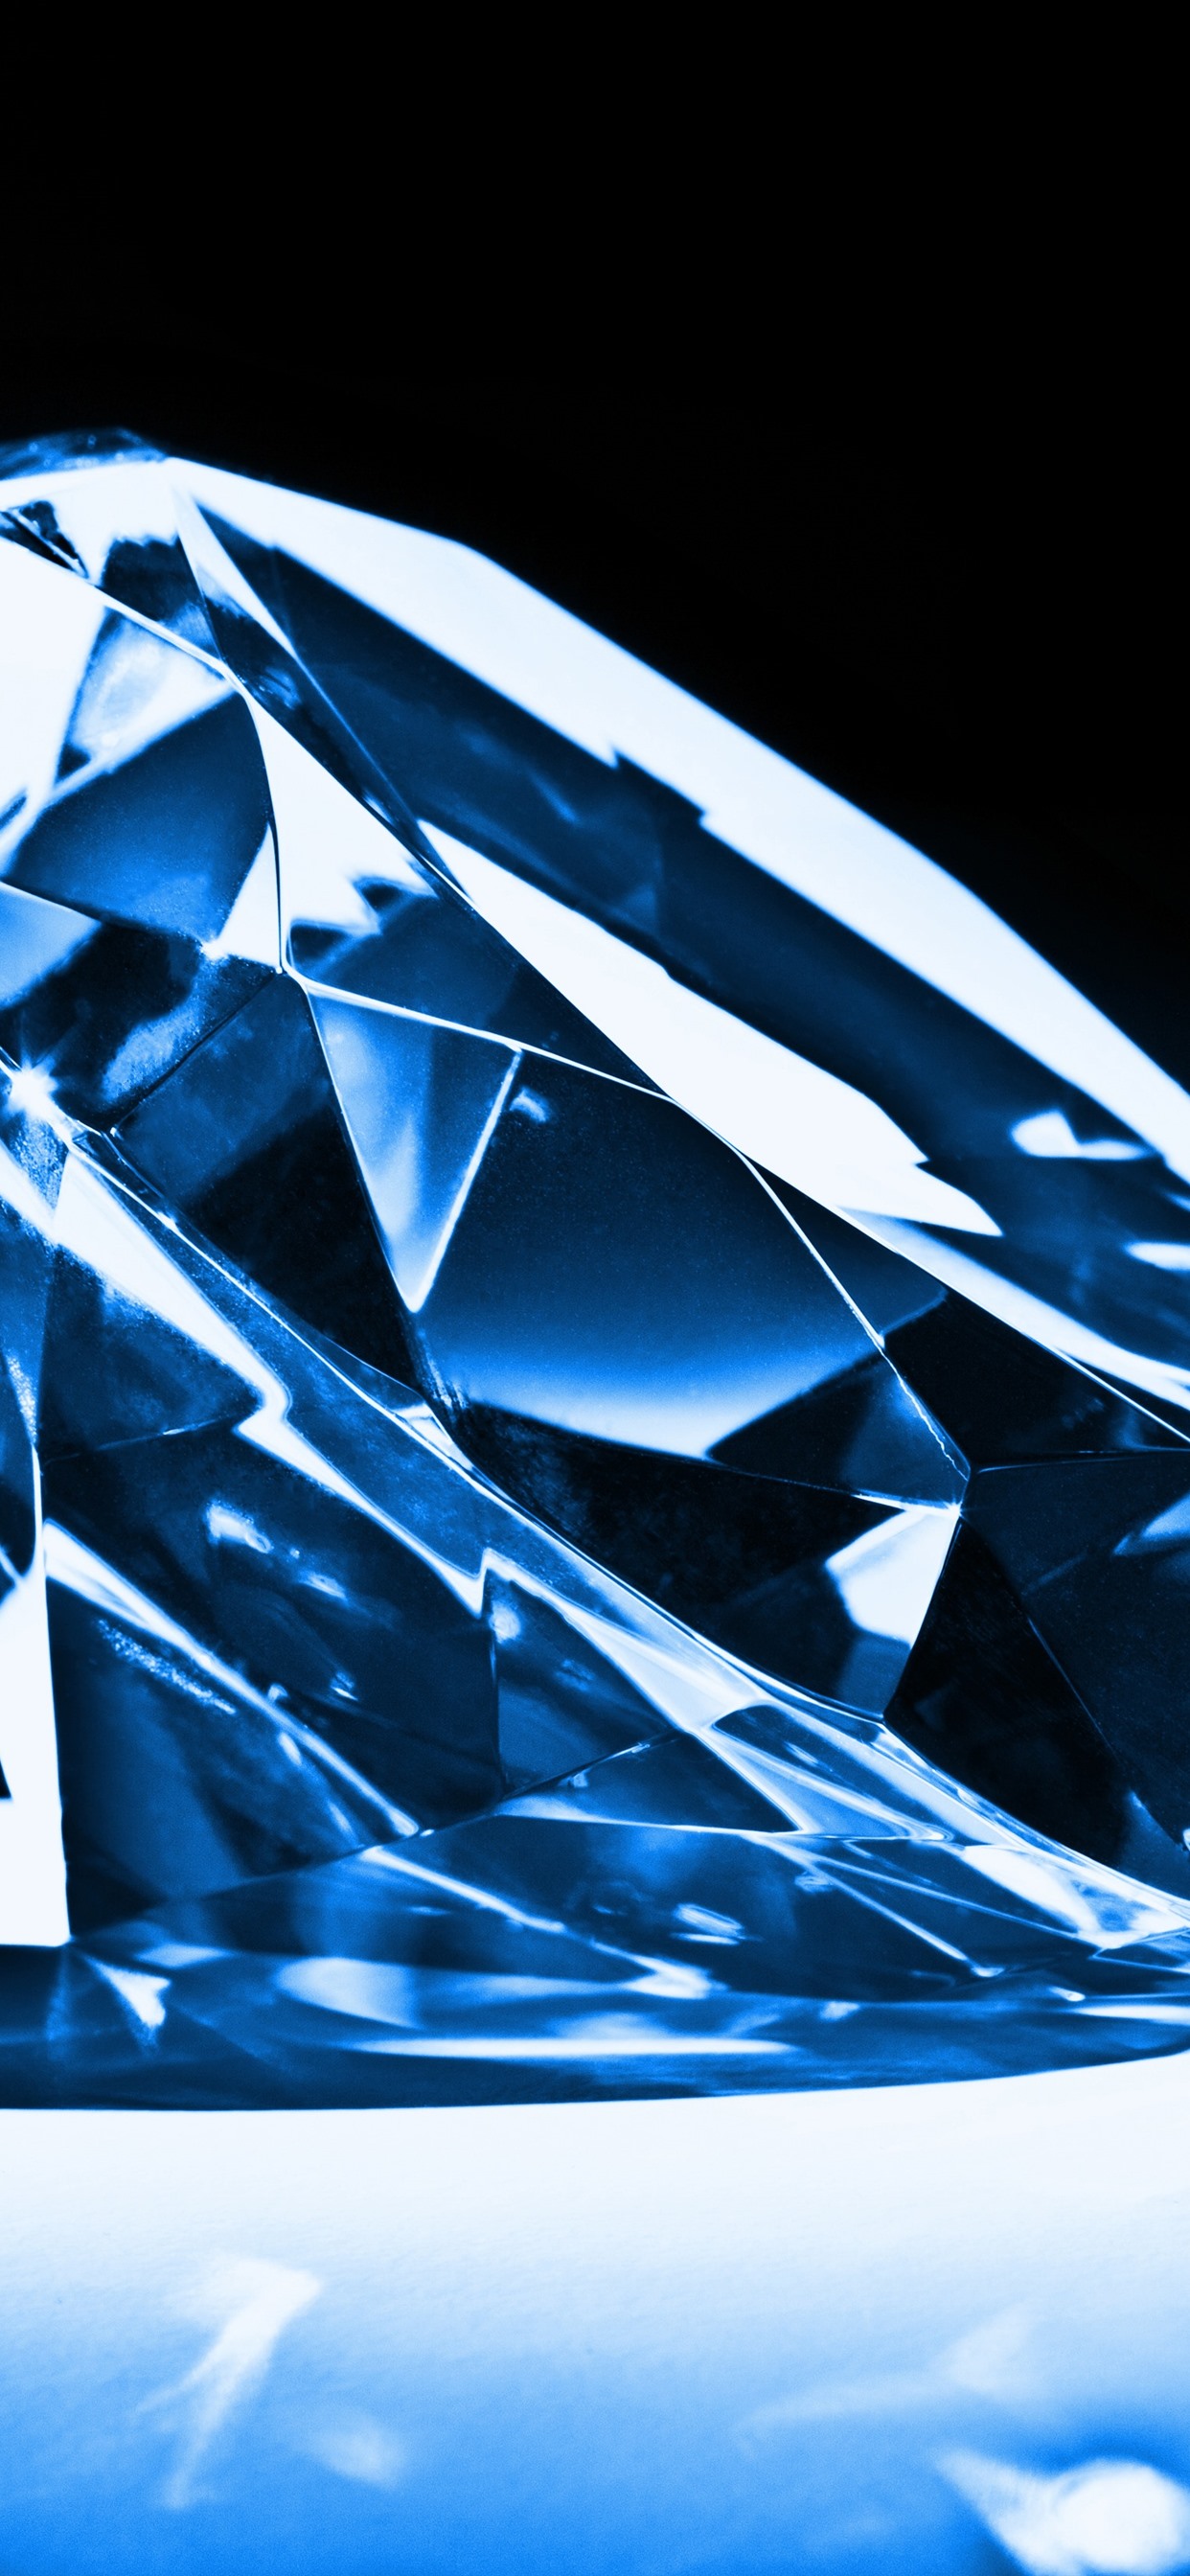 diamant tapete,blau,kobaltblau,diamant,elektrisches blau,muster